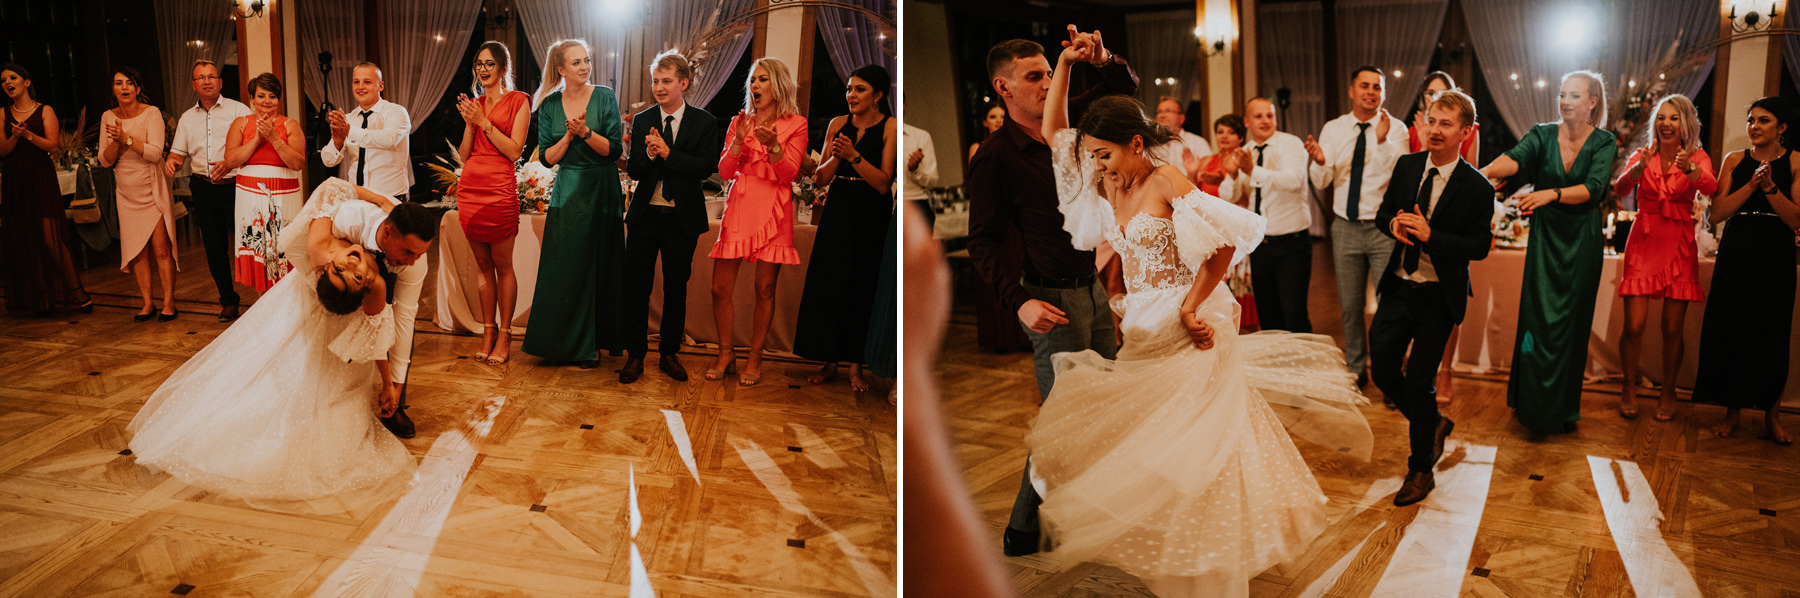 329 willa poprad wesele rytro fotograf wedding photographer karol nycz krakow